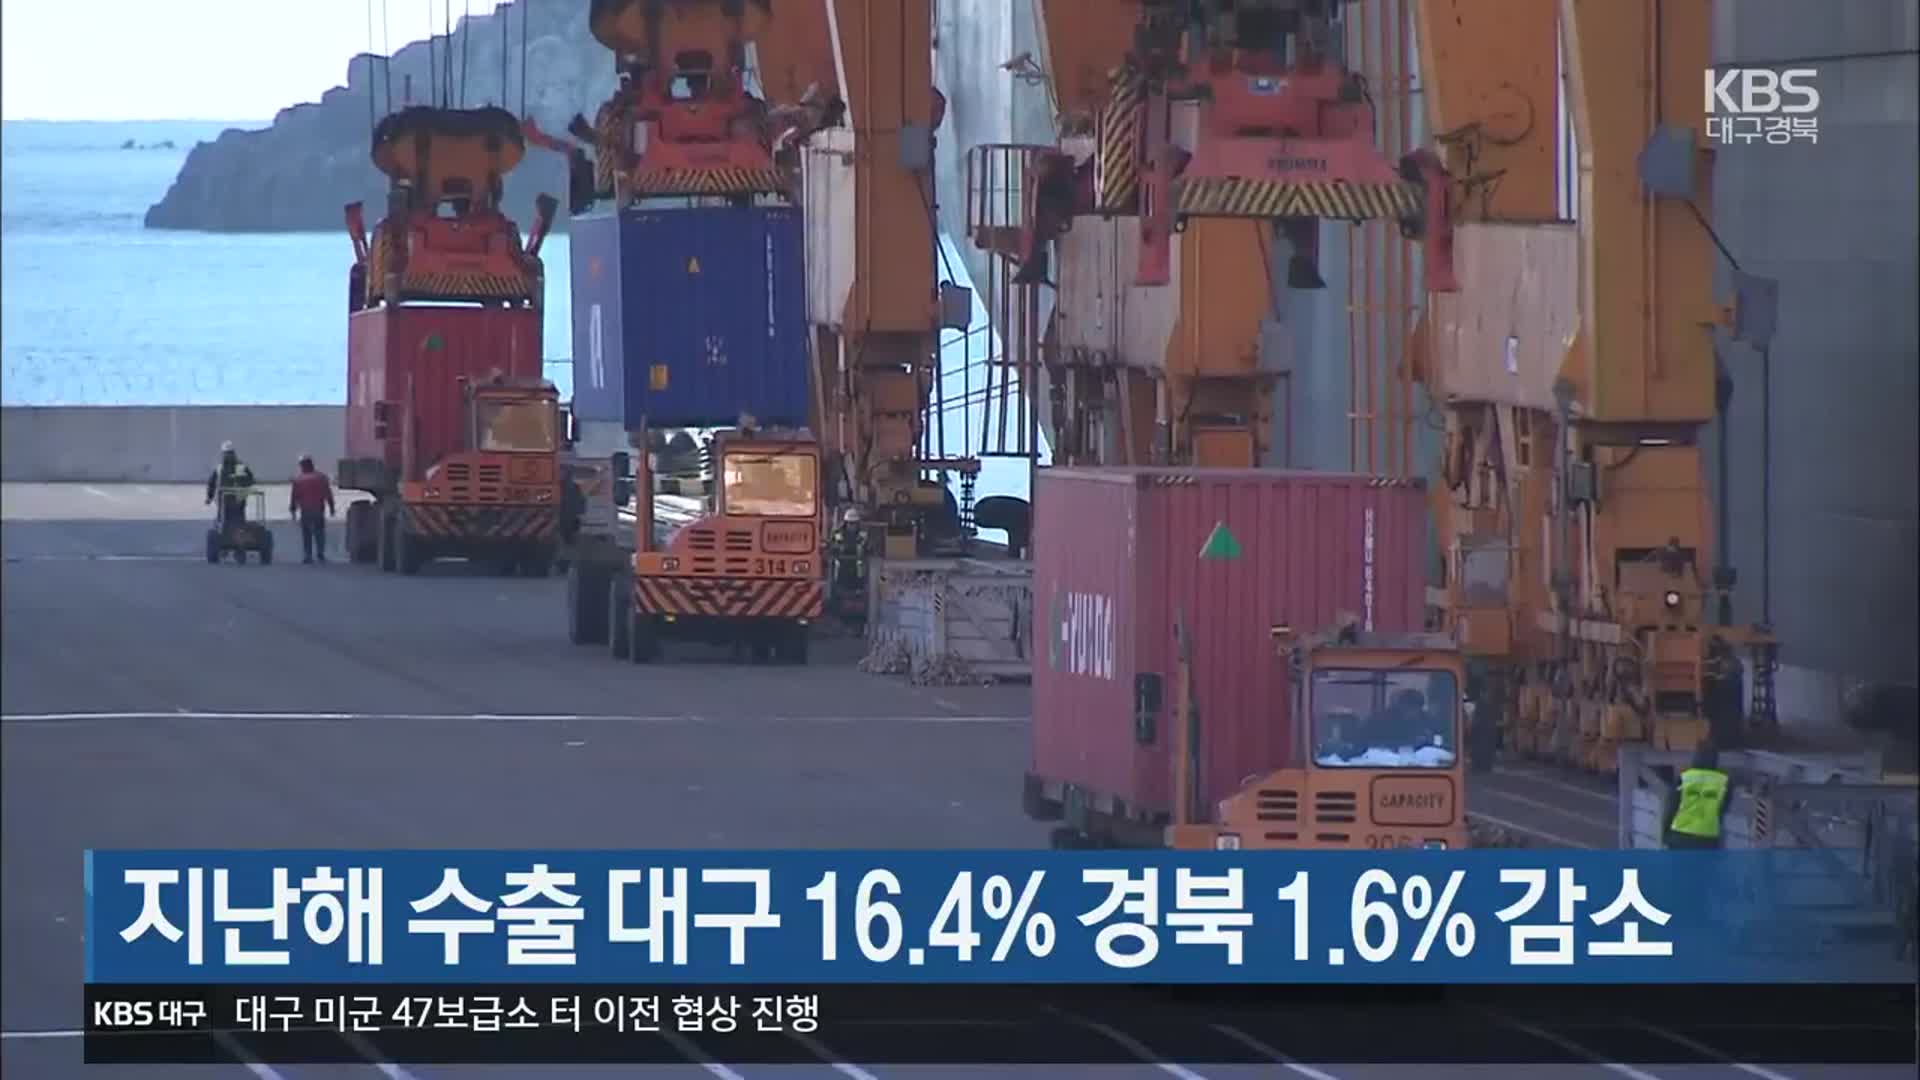 지난해 수출 대구 16.4% 경북 1.6% 감소